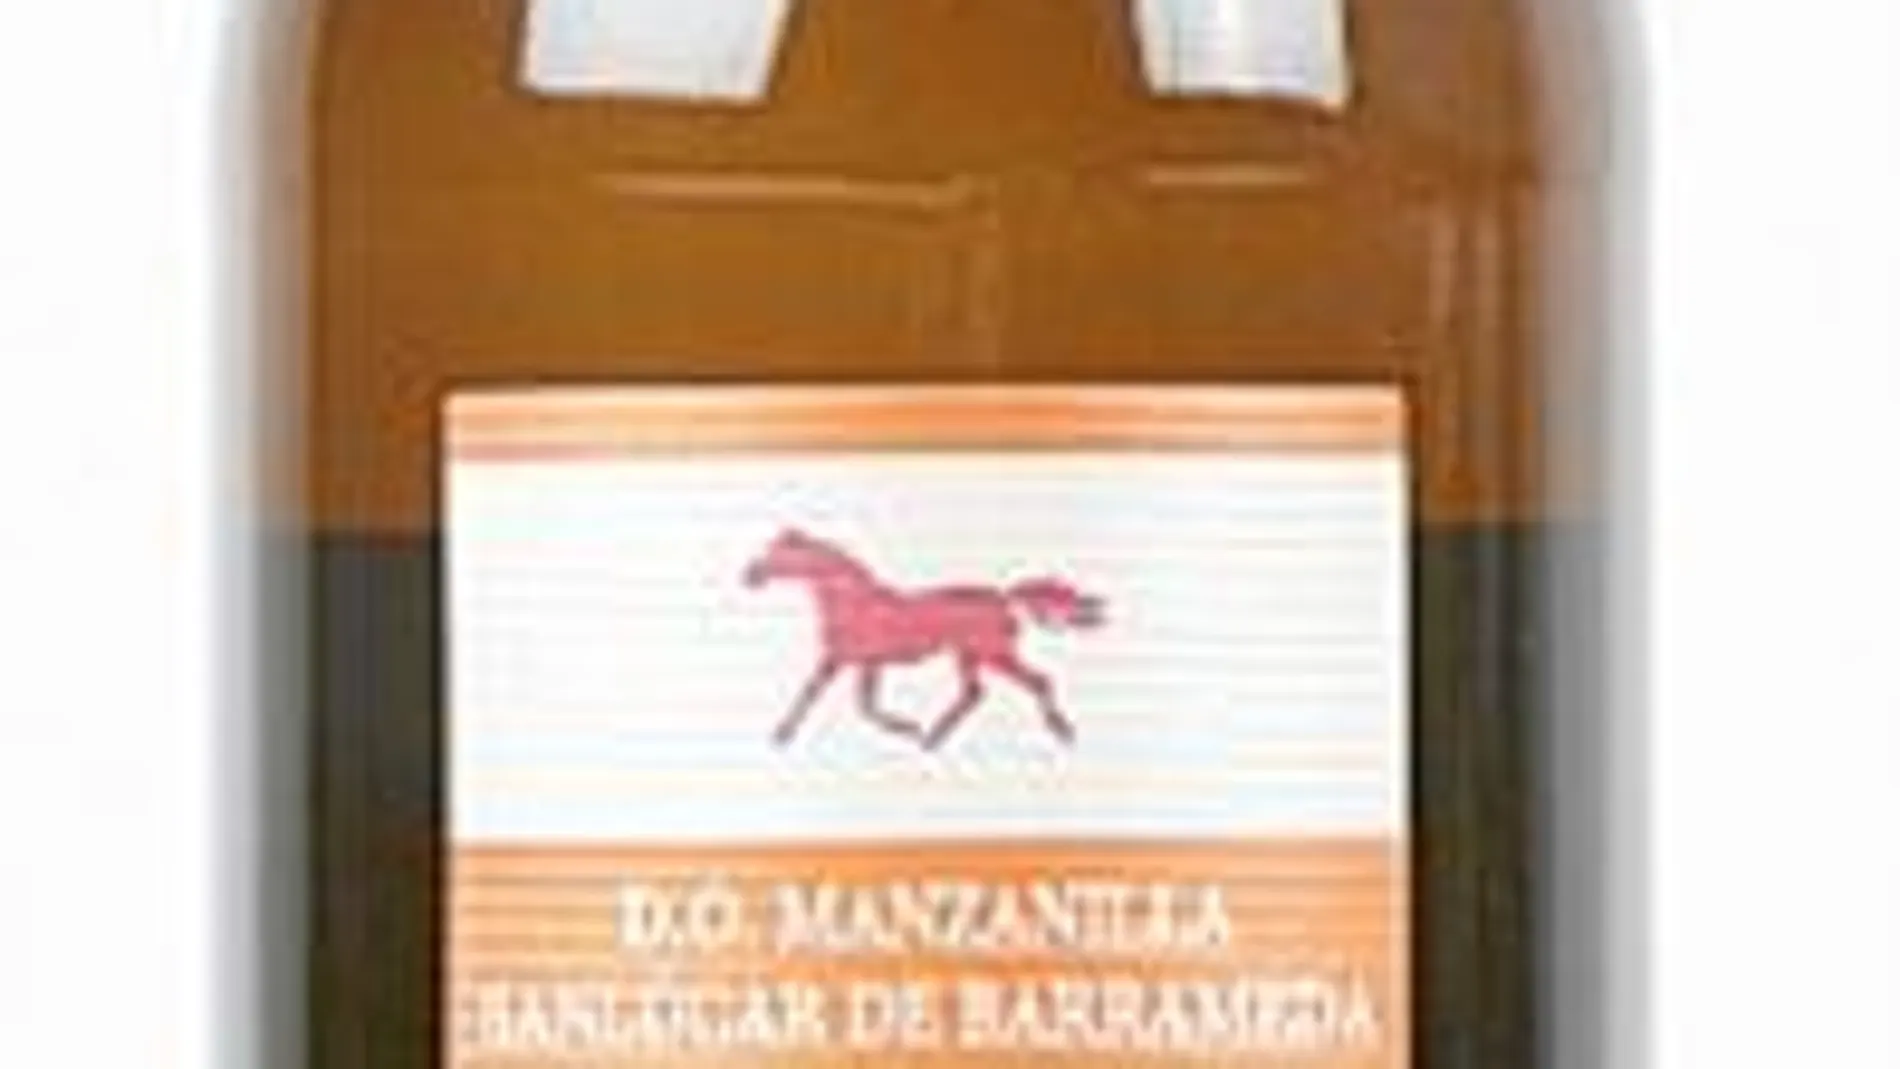 Manzanilla La Jaca